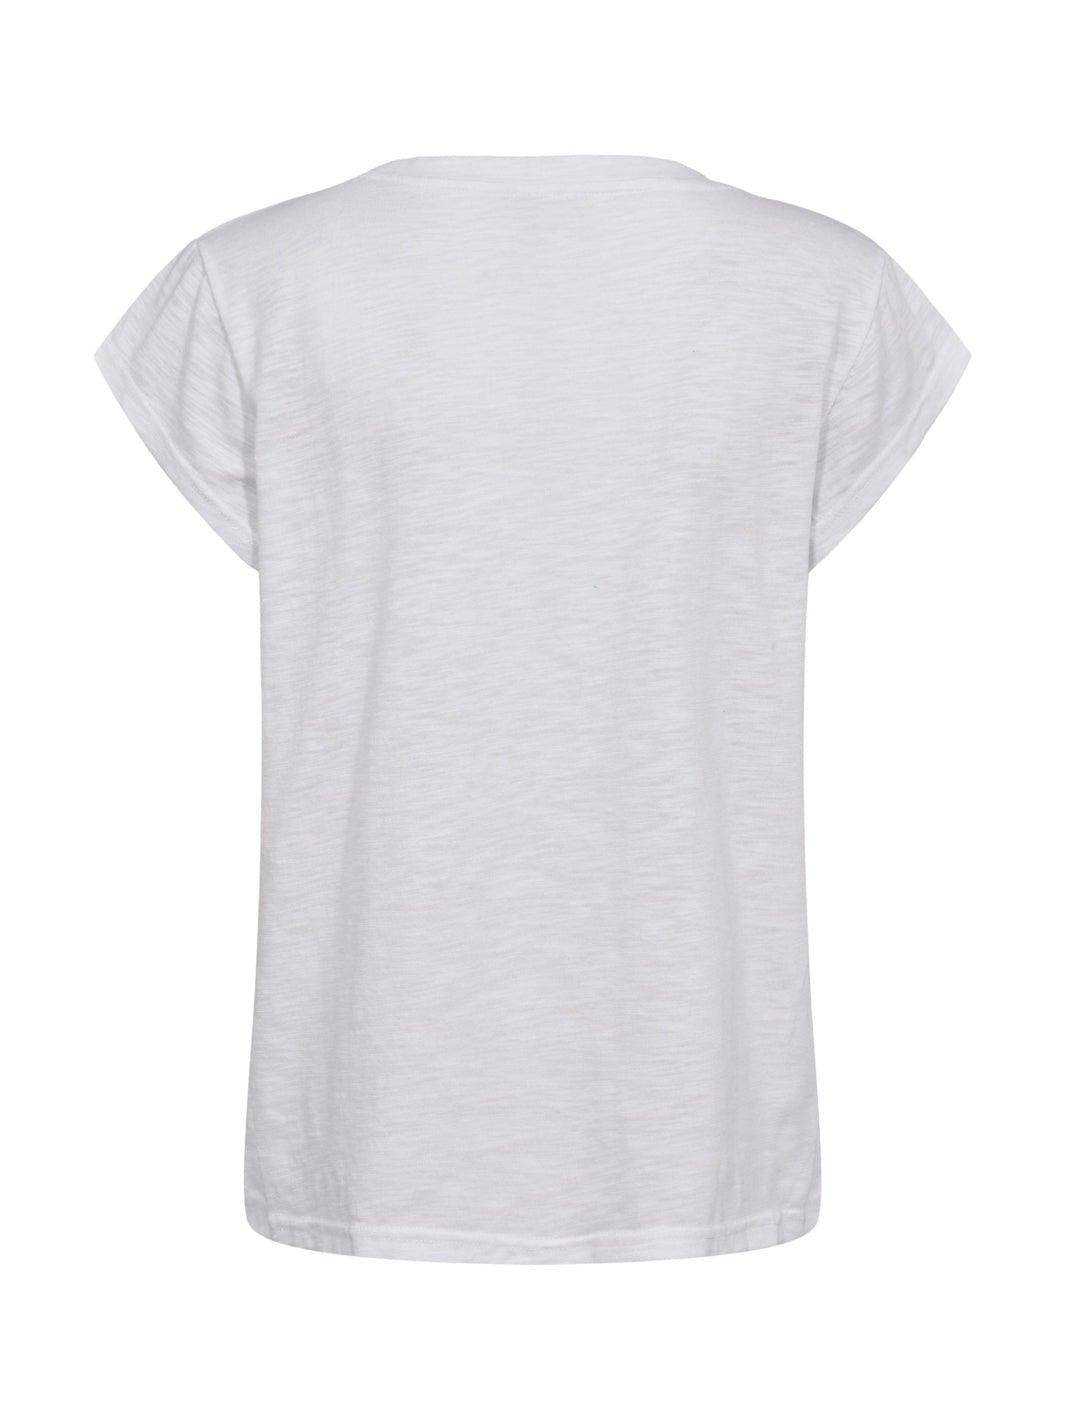 Liberté Ulla t - shirt white - Online - Mode